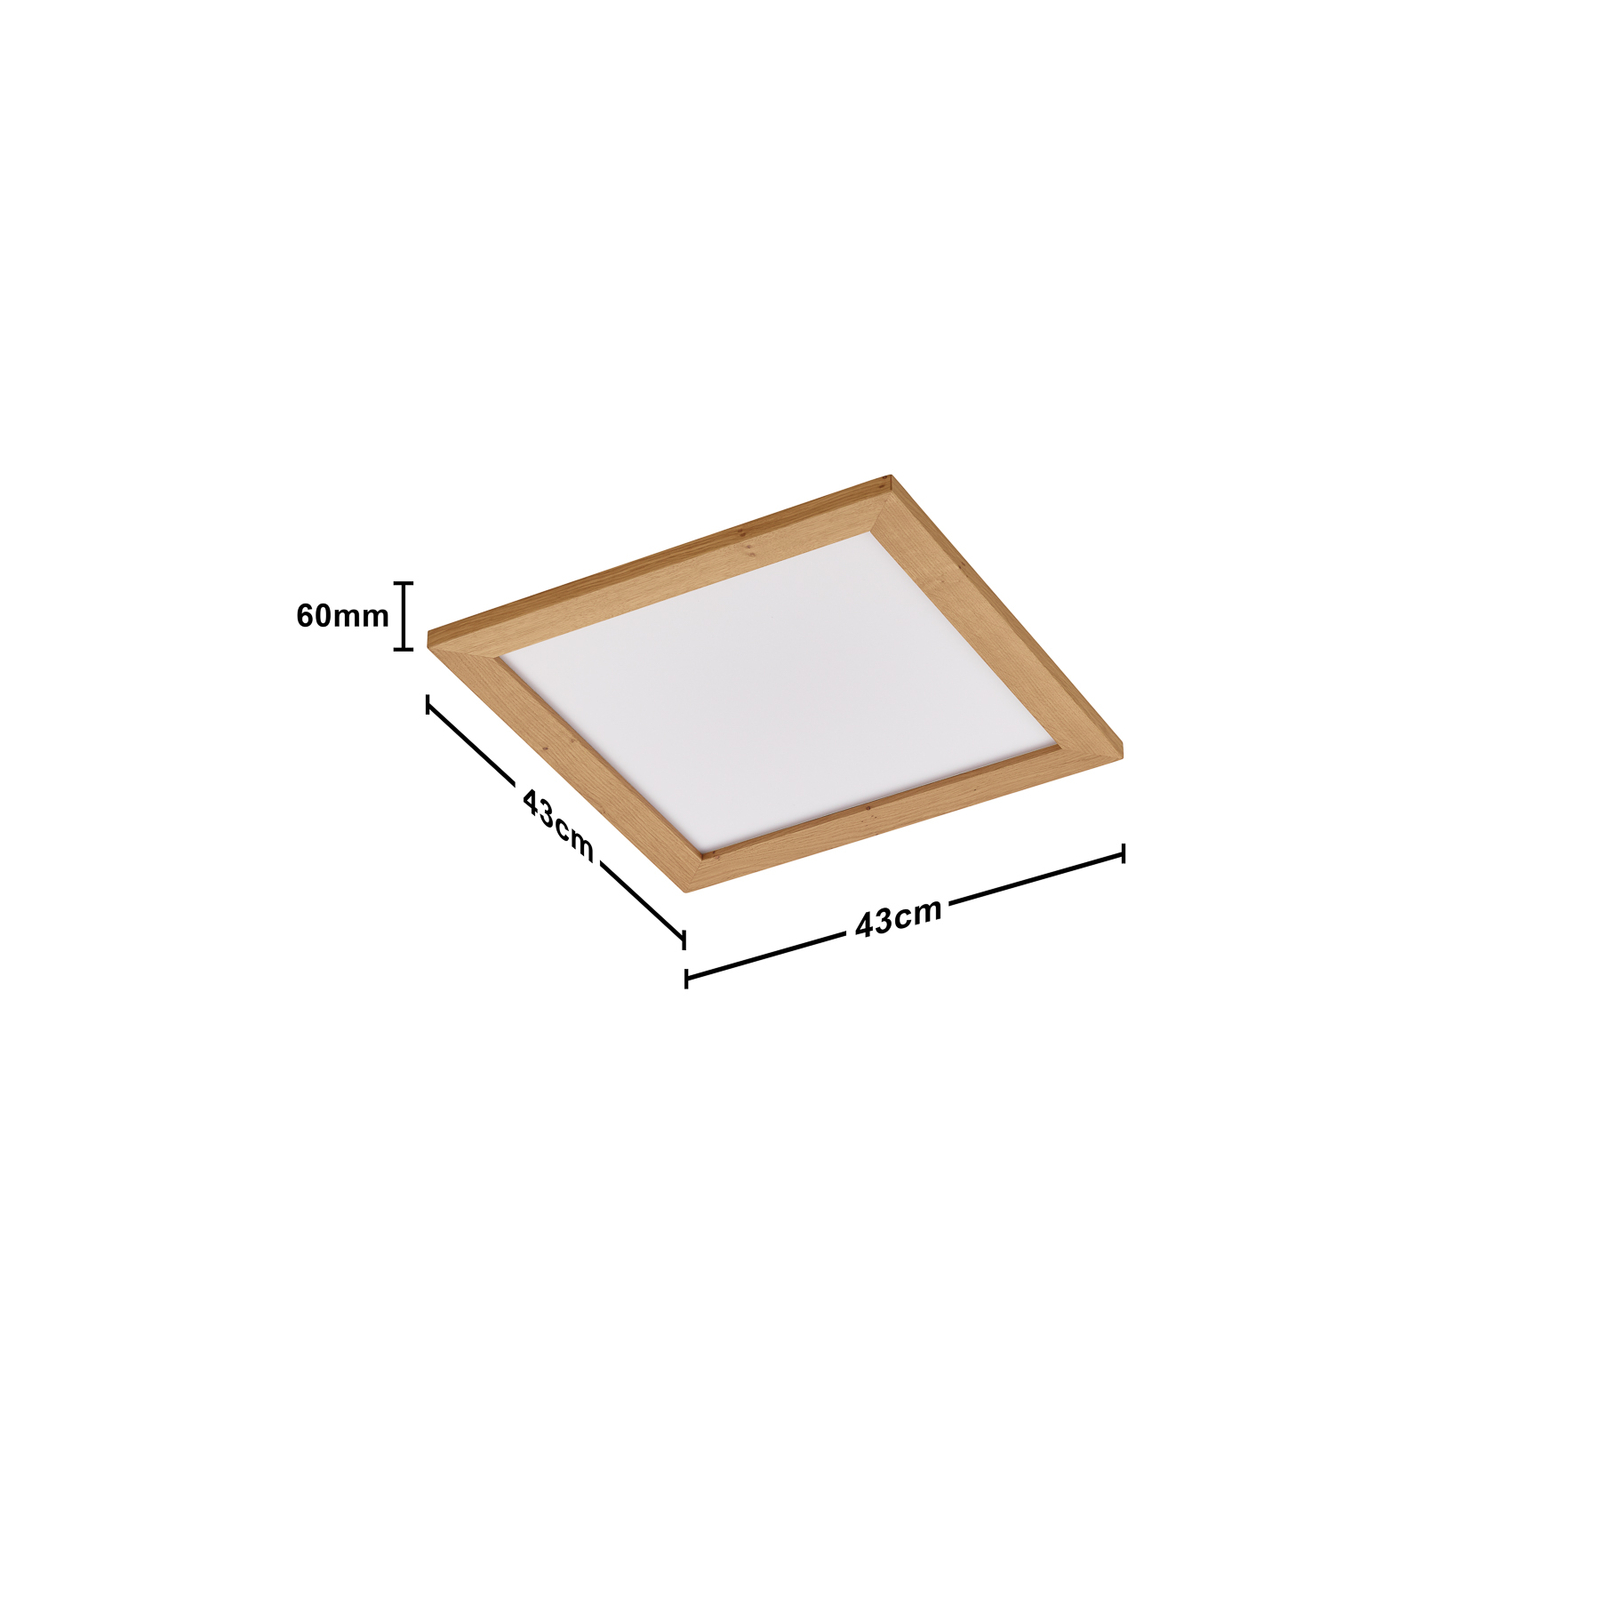 Quitani Aurinor LED paneel, eiken naturel, 45 cm